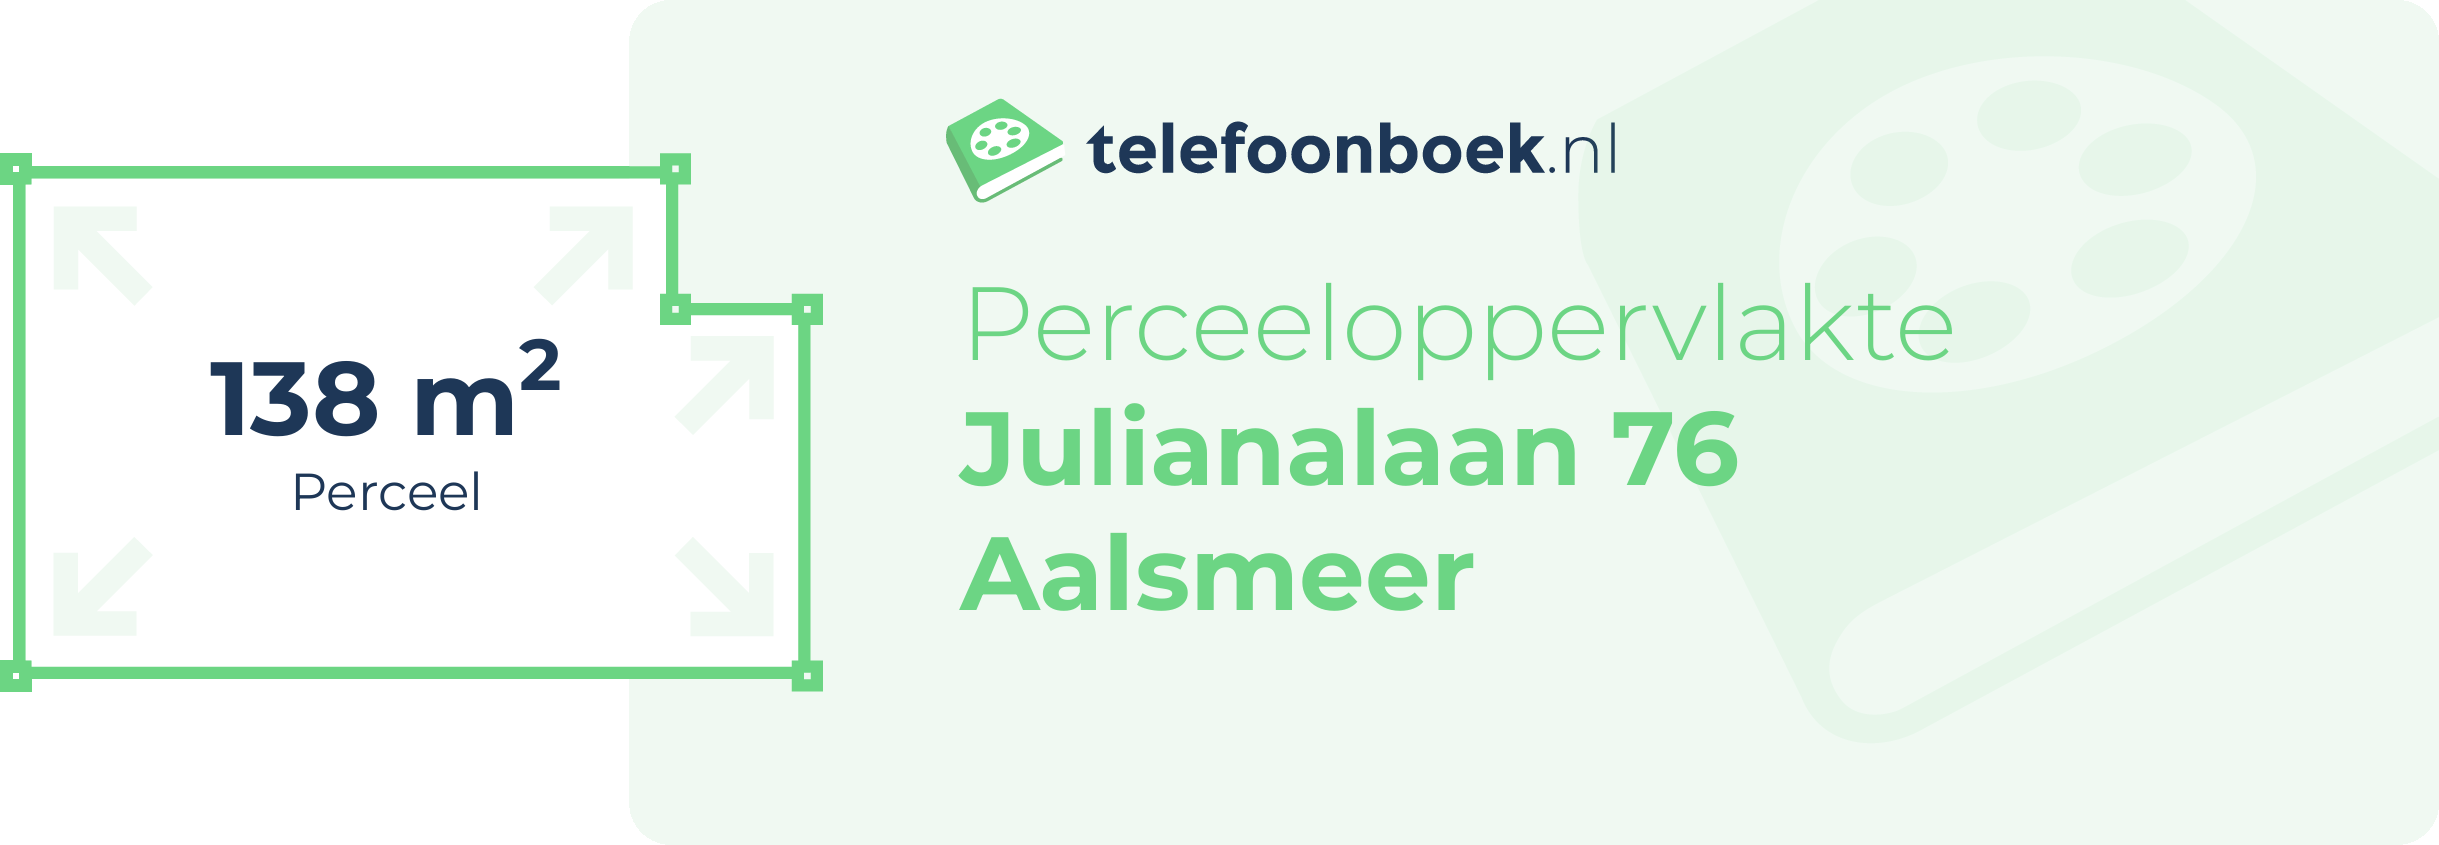 Perceeloppervlakte Julianalaan 76 Aalsmeer